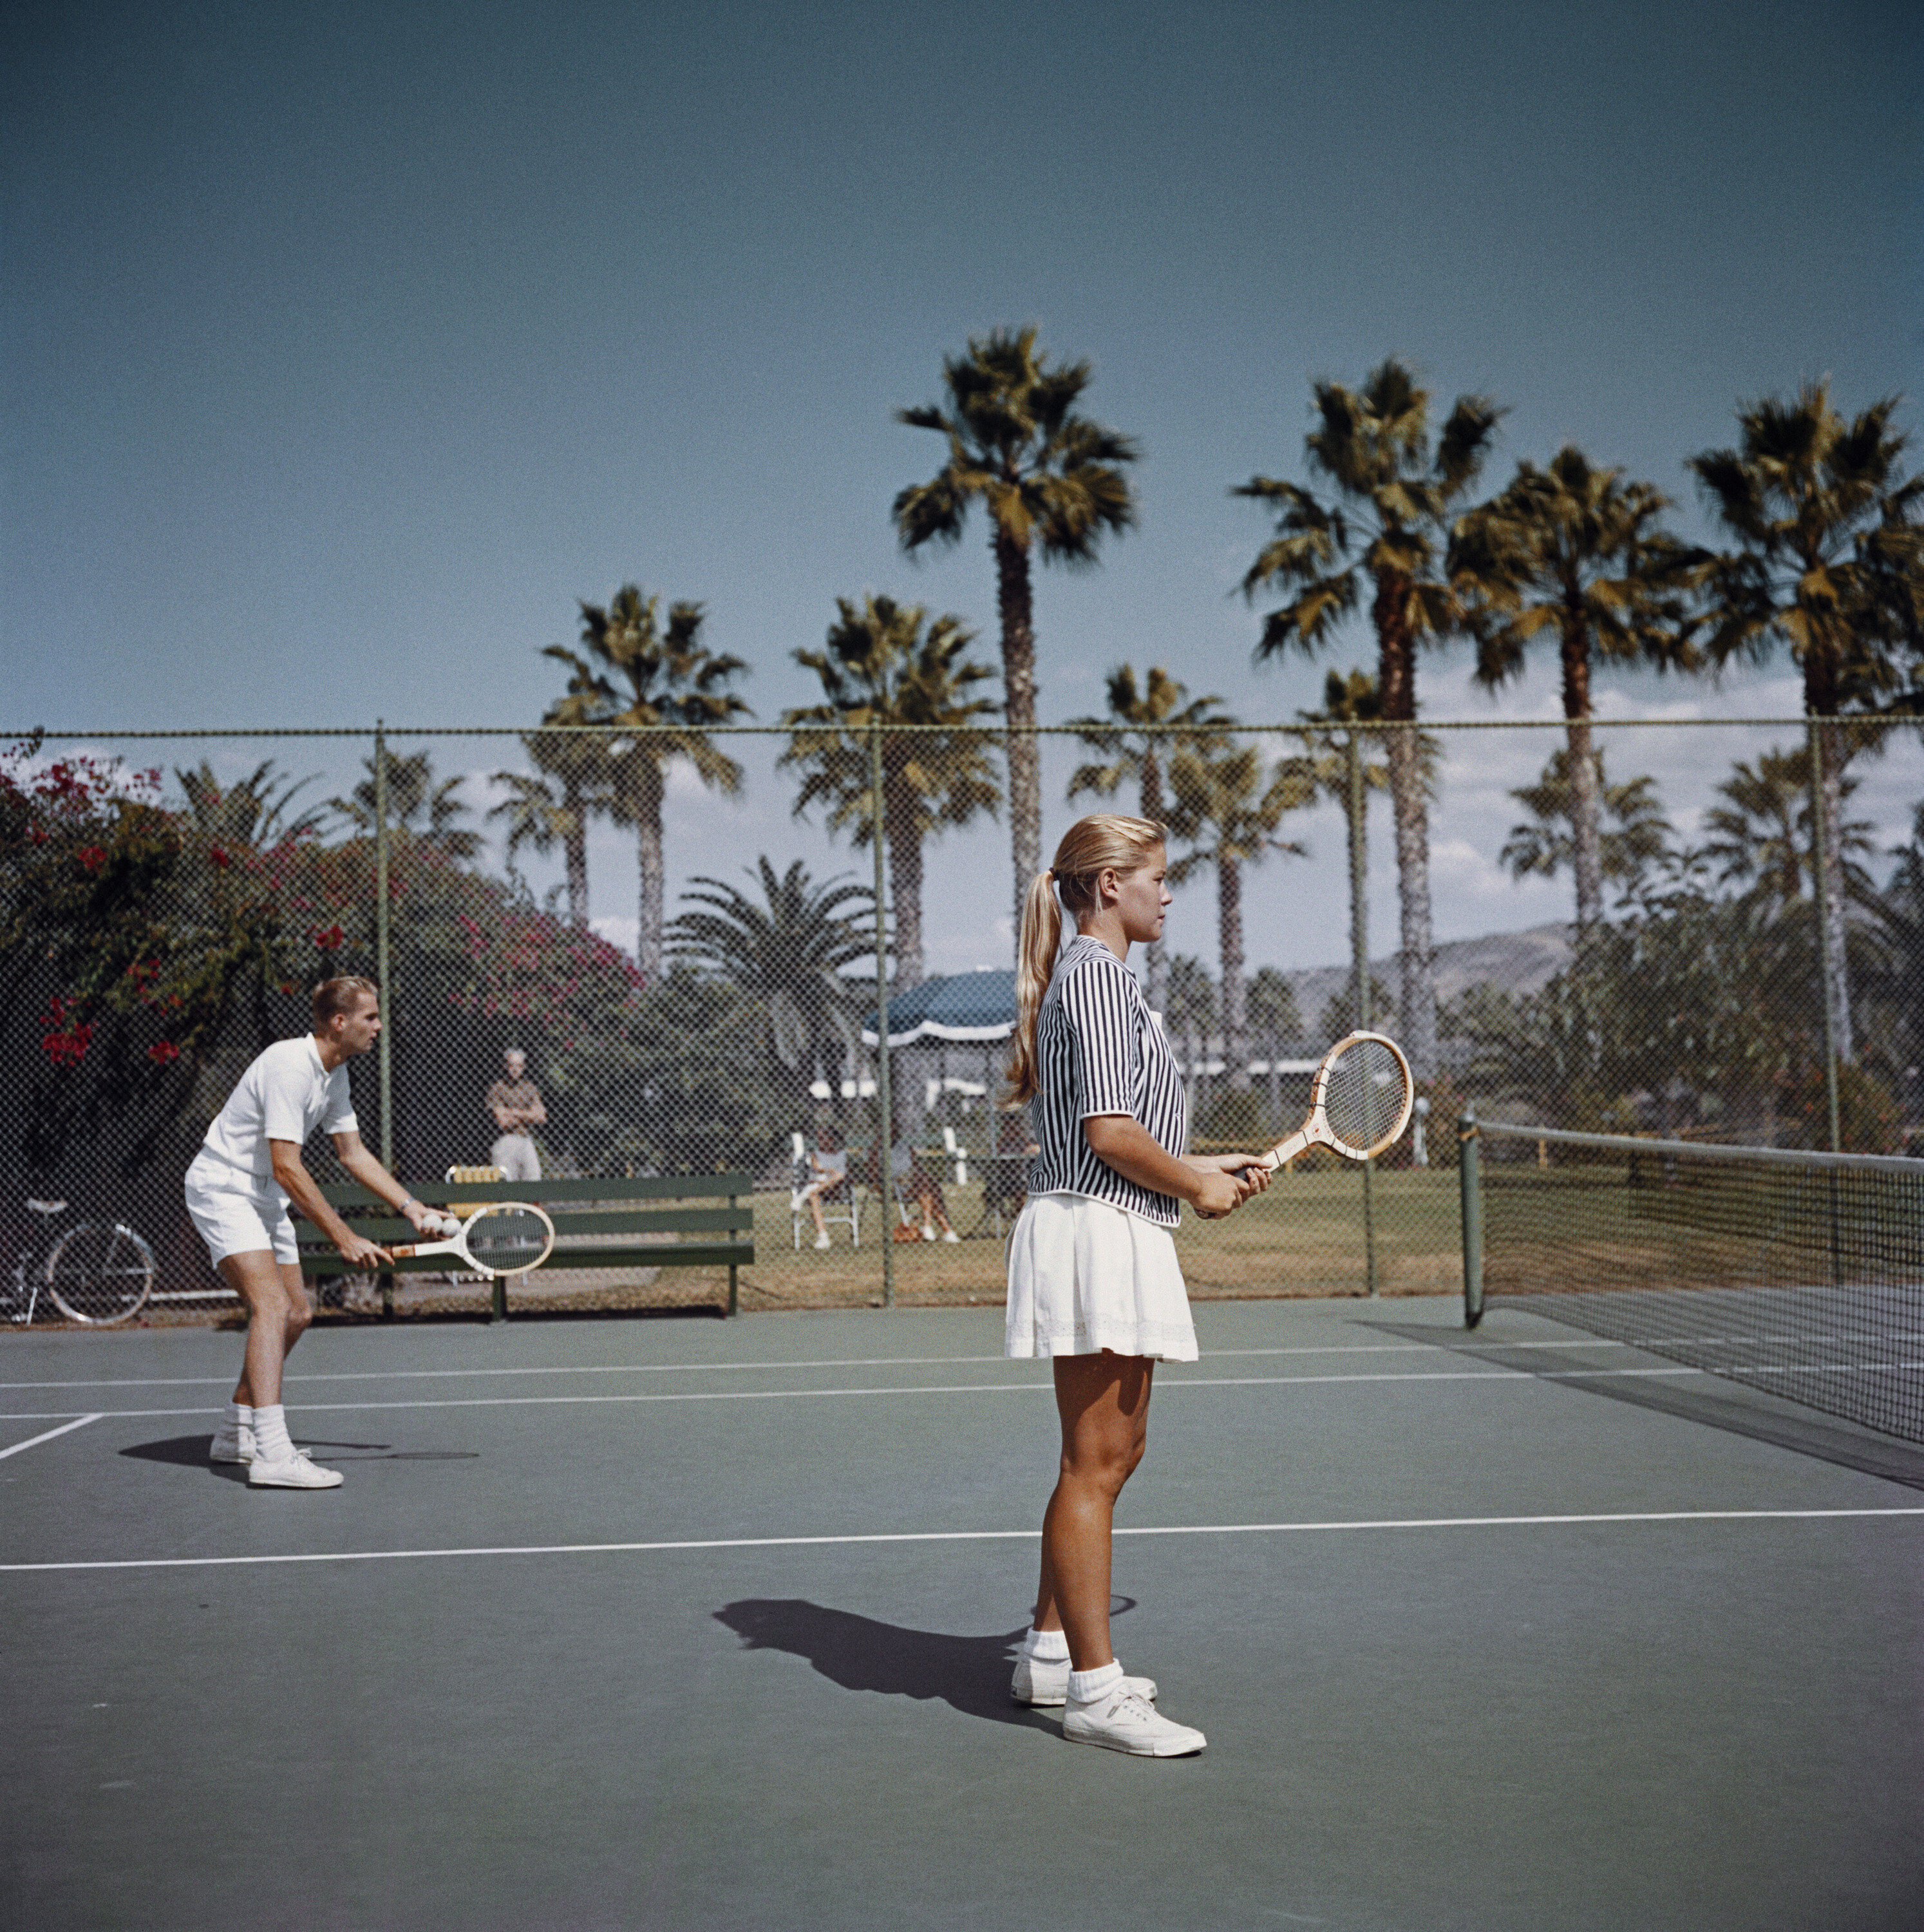 Теннис в Сан-Диего, 1960 год. Фотограф Слим Ааронс